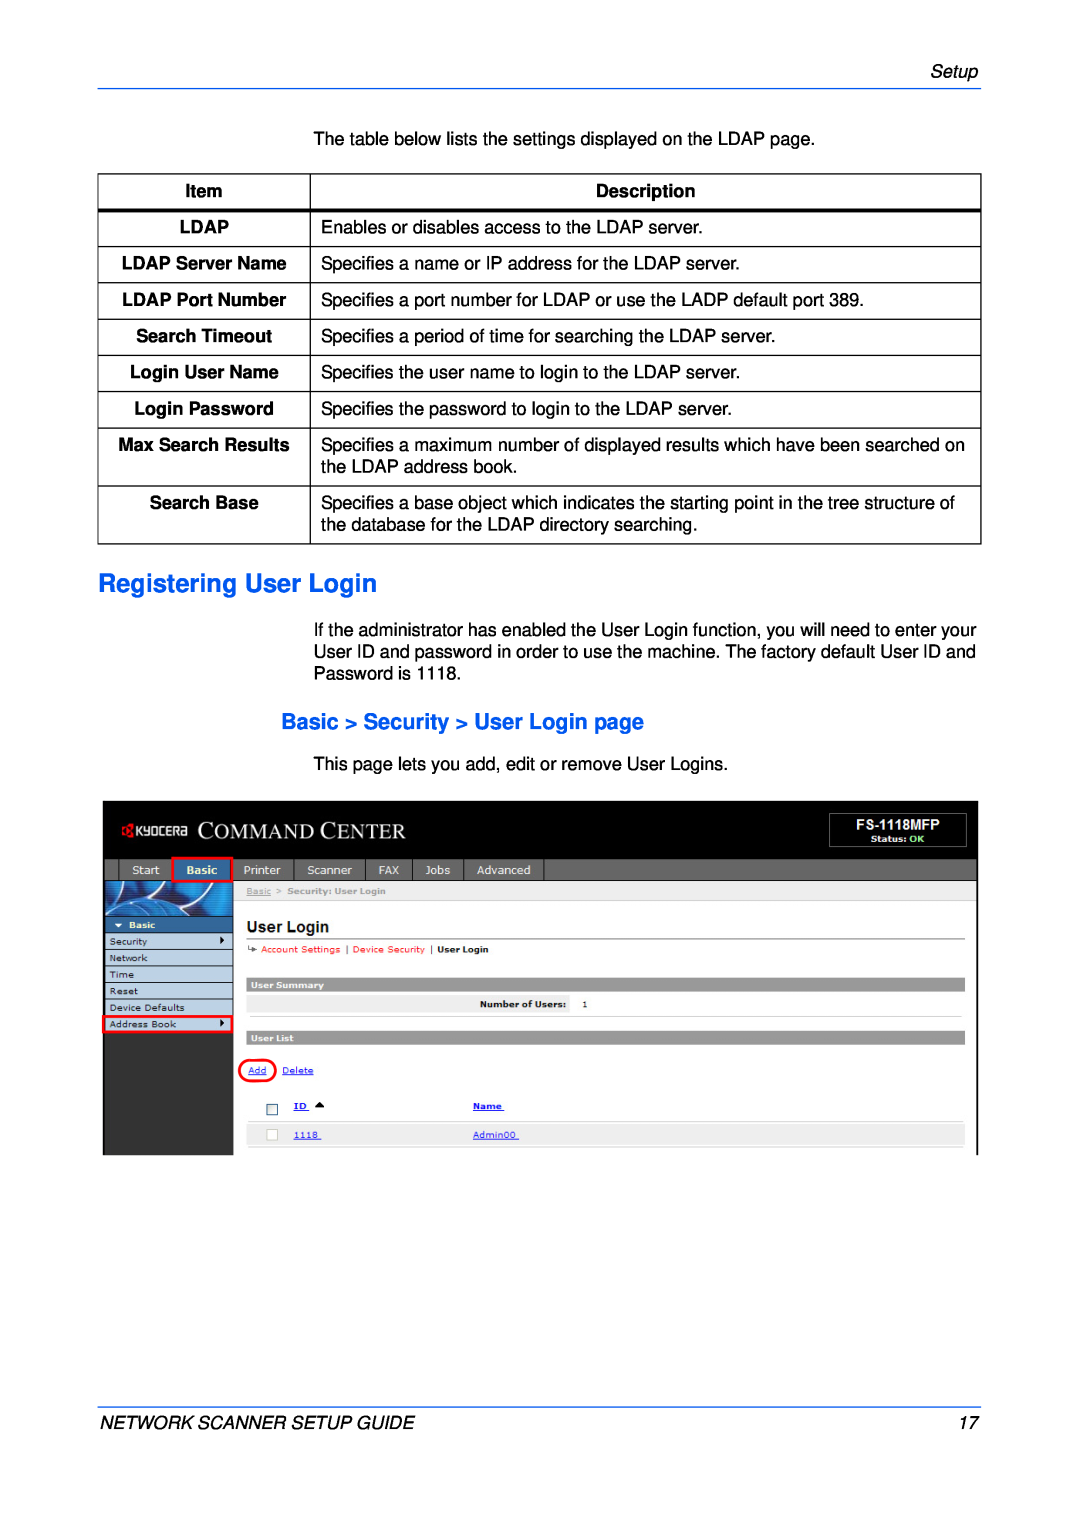 Kyocera FS-1118MFP Registering User Login, Basic Security User Login page, Ldap, LDAP Server Name, LDAP Port Number 